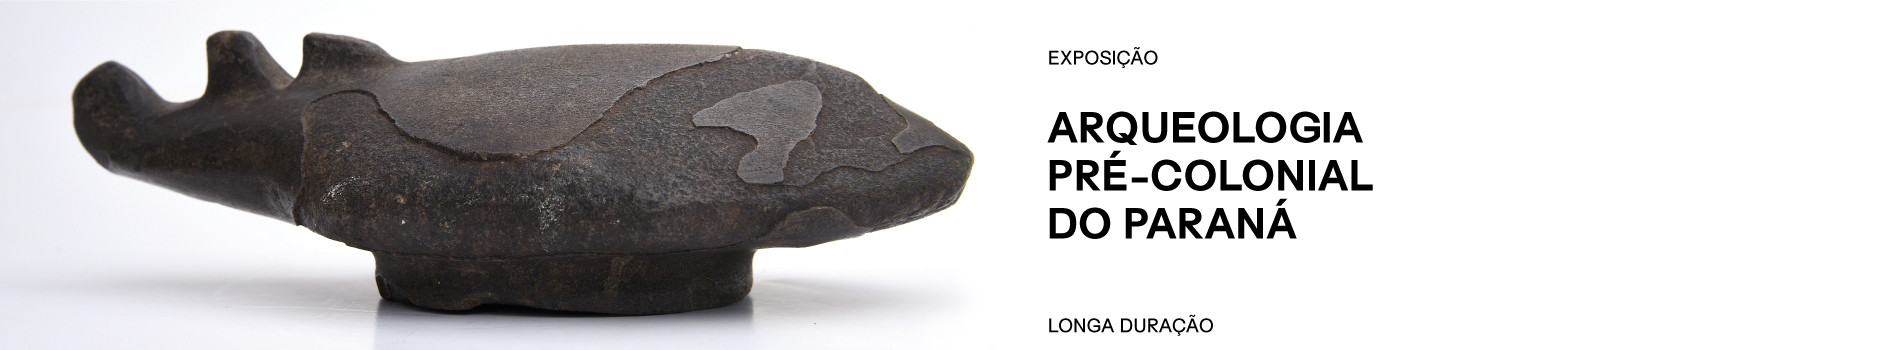 Banner exposição Arqueologia pré-colonial do Paraná